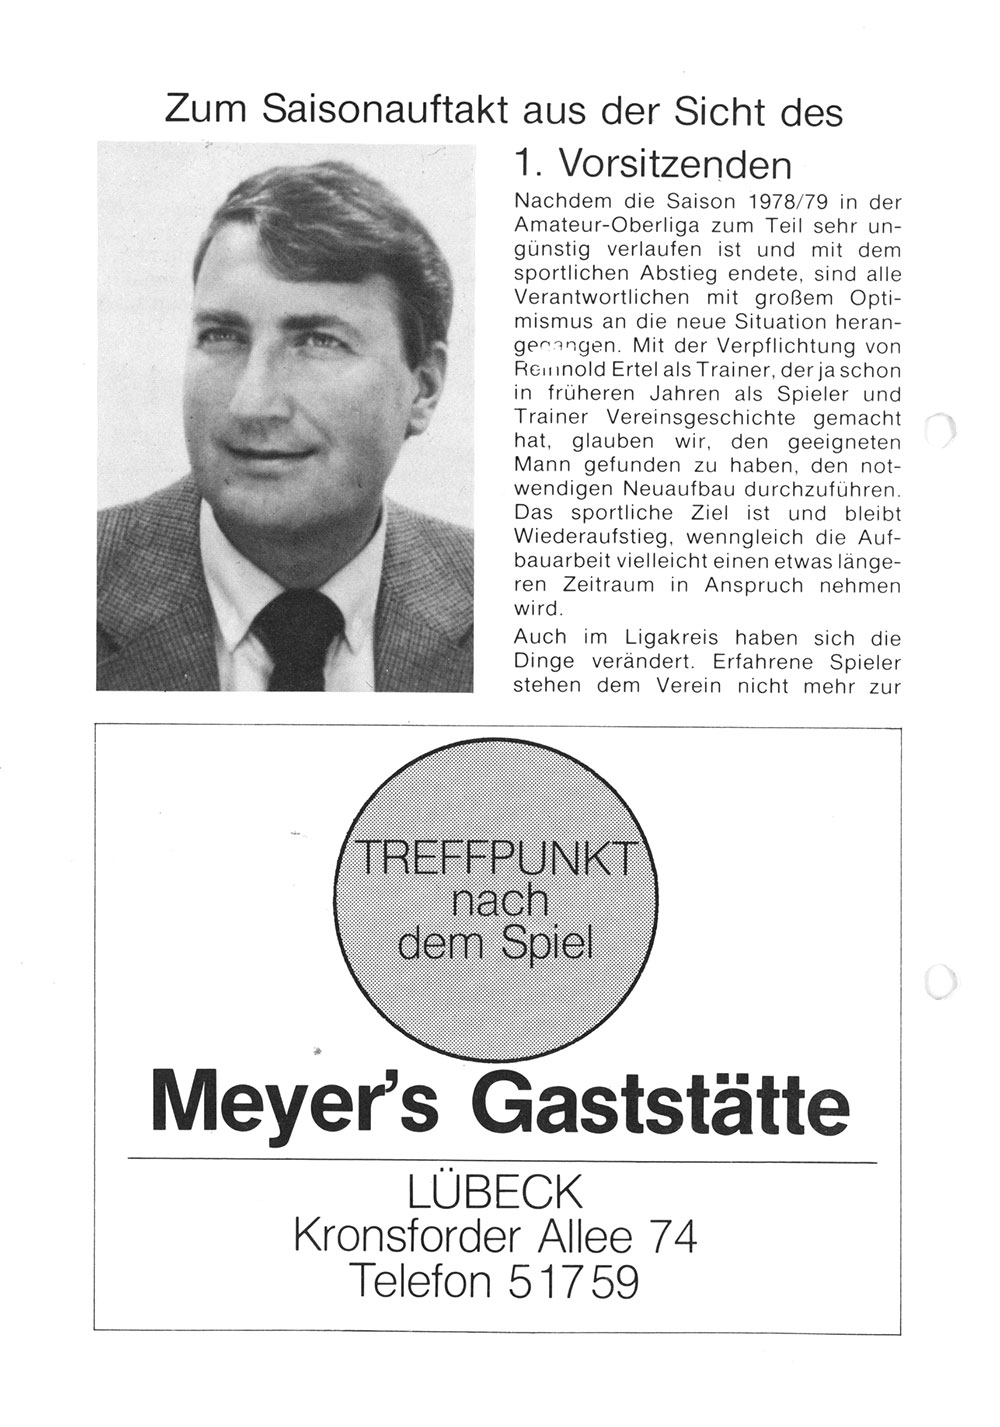 Der PHÖNIX Express v. 18.8.1979